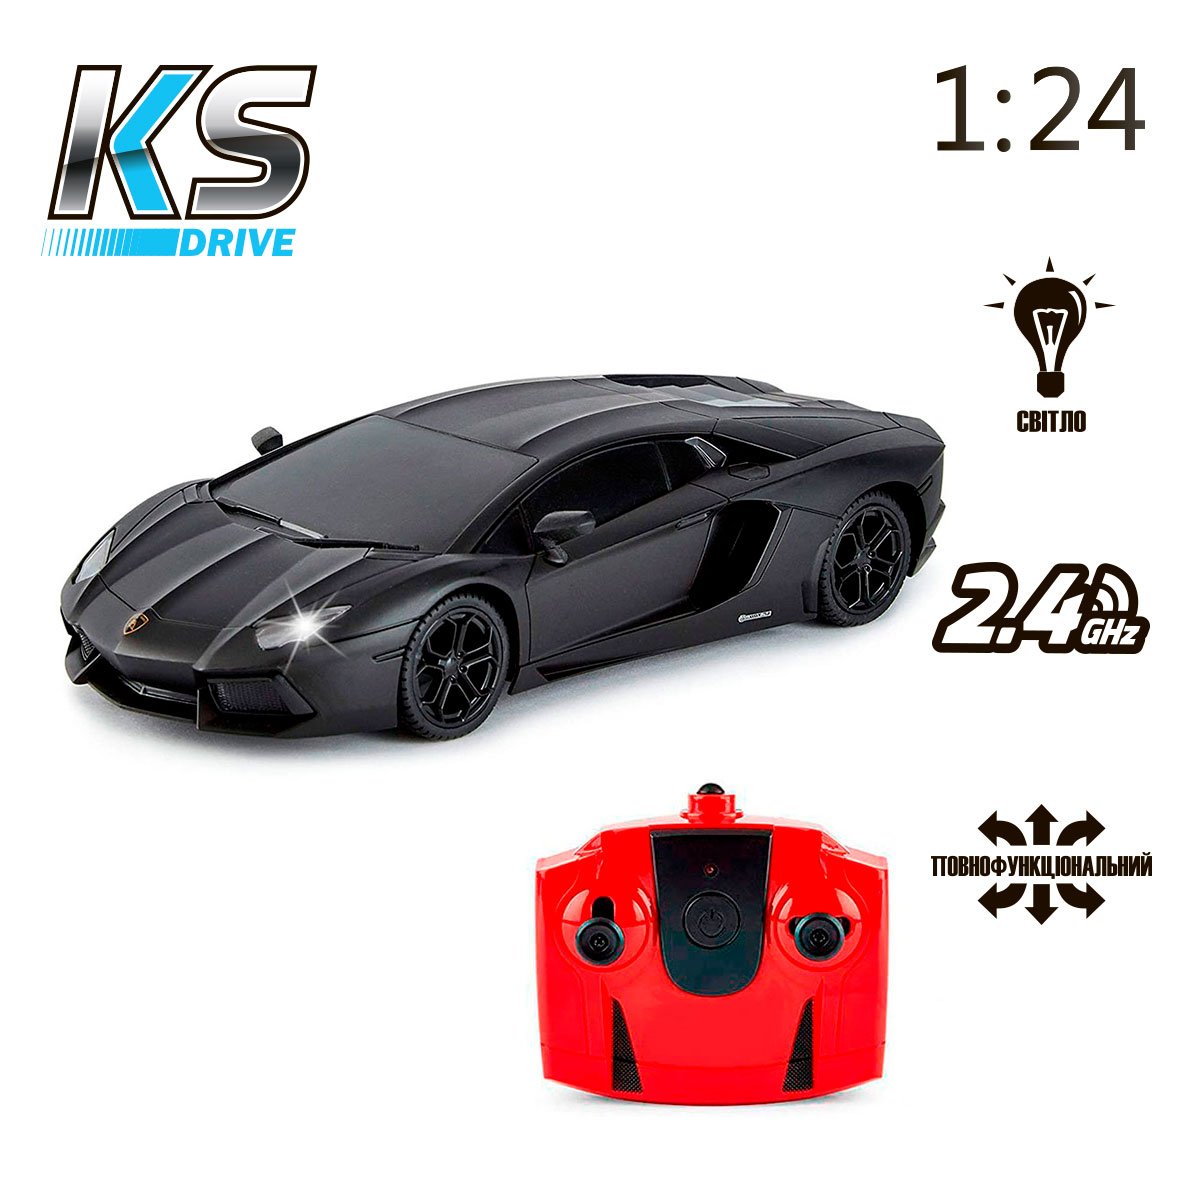 Автомобиль KS Drive на р/у Lamborghini Aventador LP 700-4, 1:24, 2.4Ghz черный (124GLBB) - фото 6